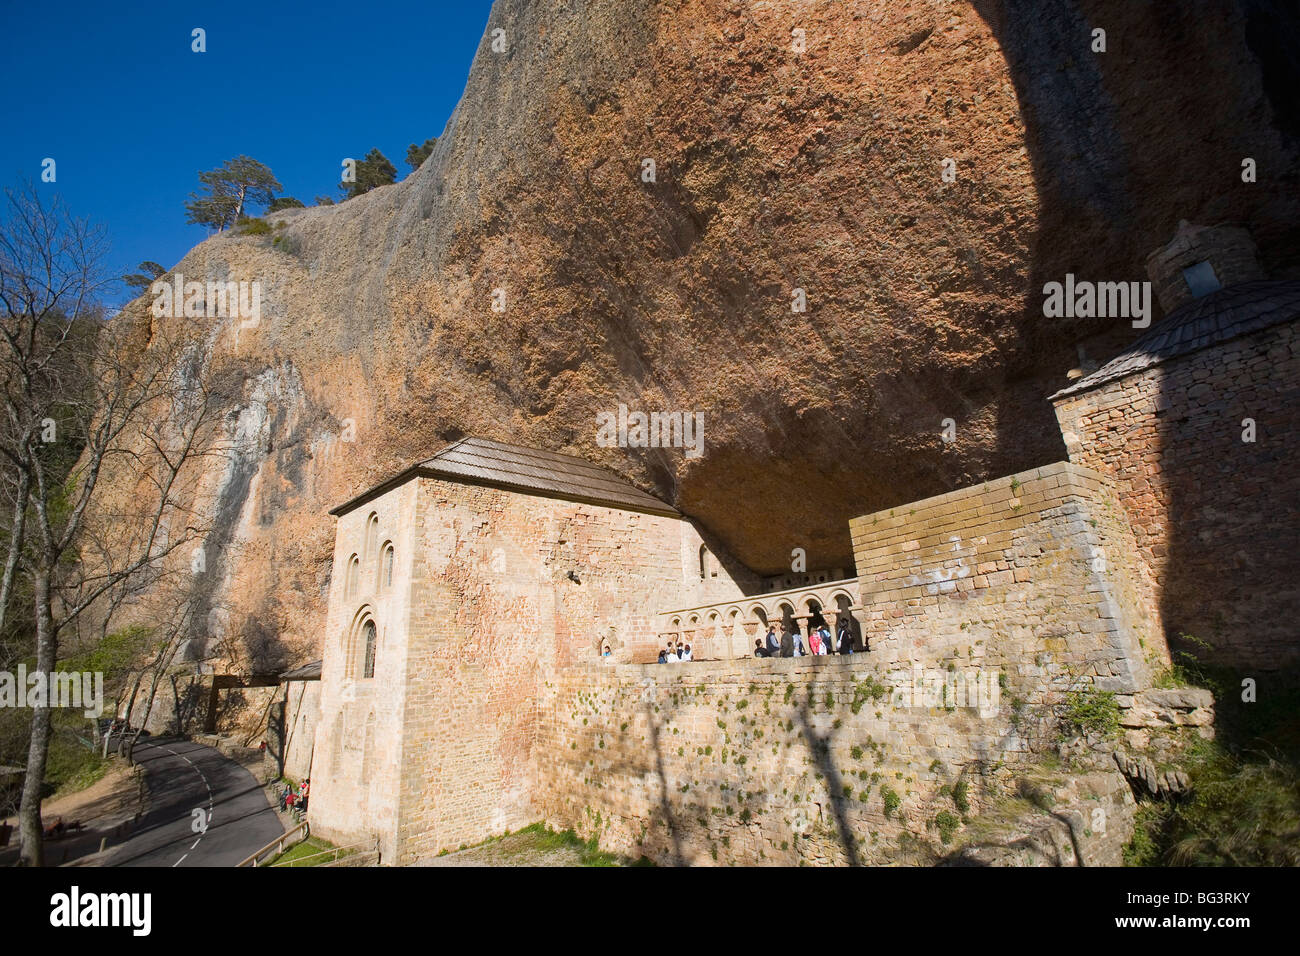 San Juan de la Pena monastery, Jaca, Aragon, Spain, Europe Stock Photo